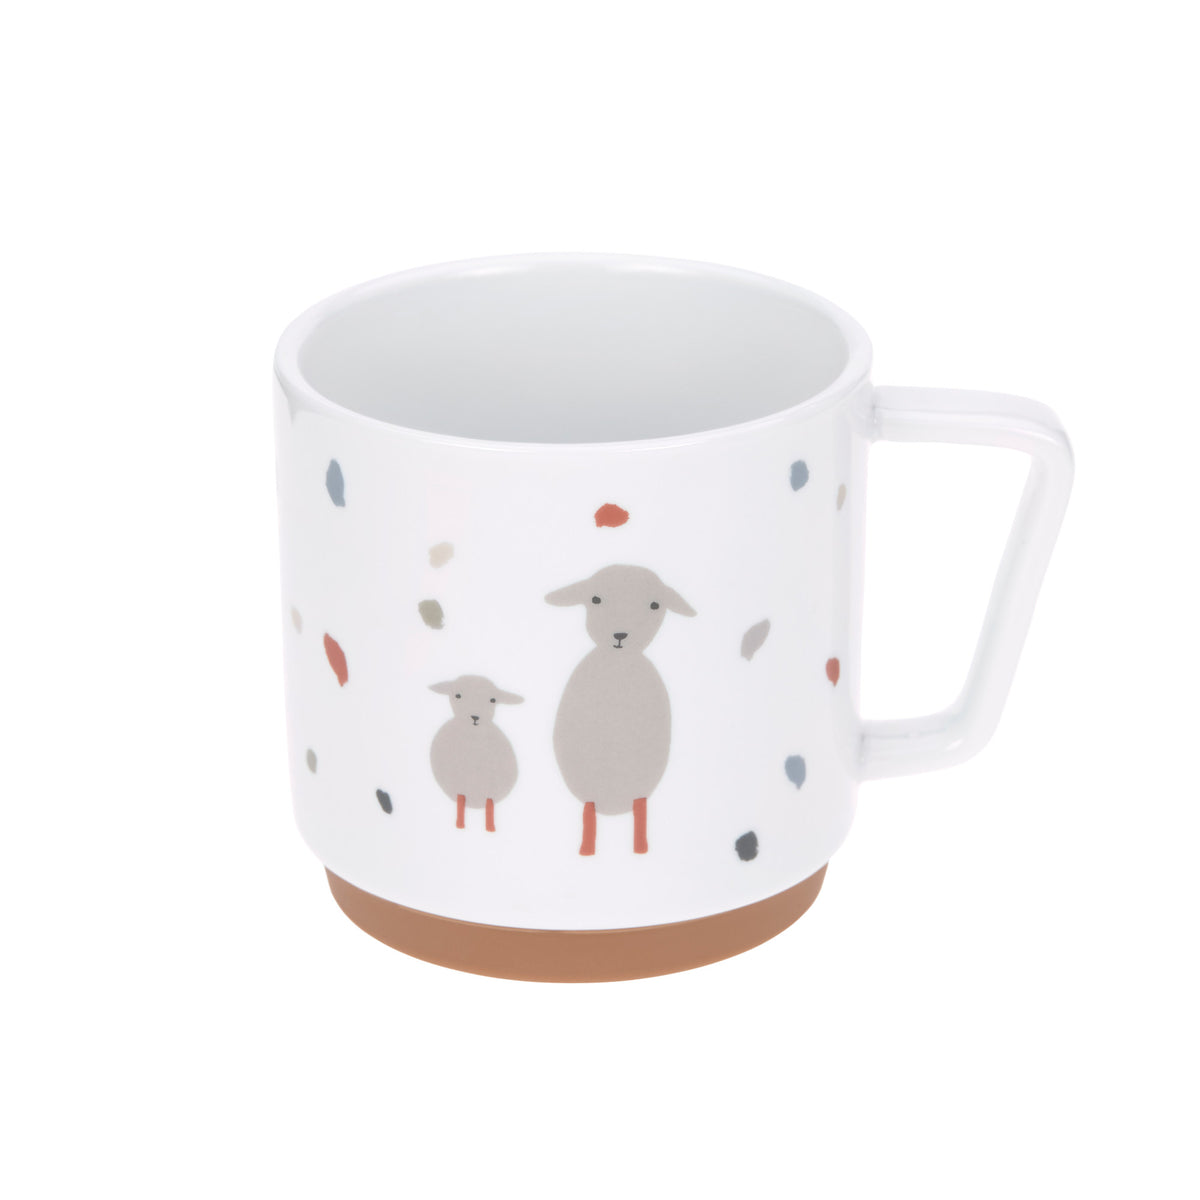 Lässig Mugg Porcelain/Silicone Tiny Farmer Sheep/Goose